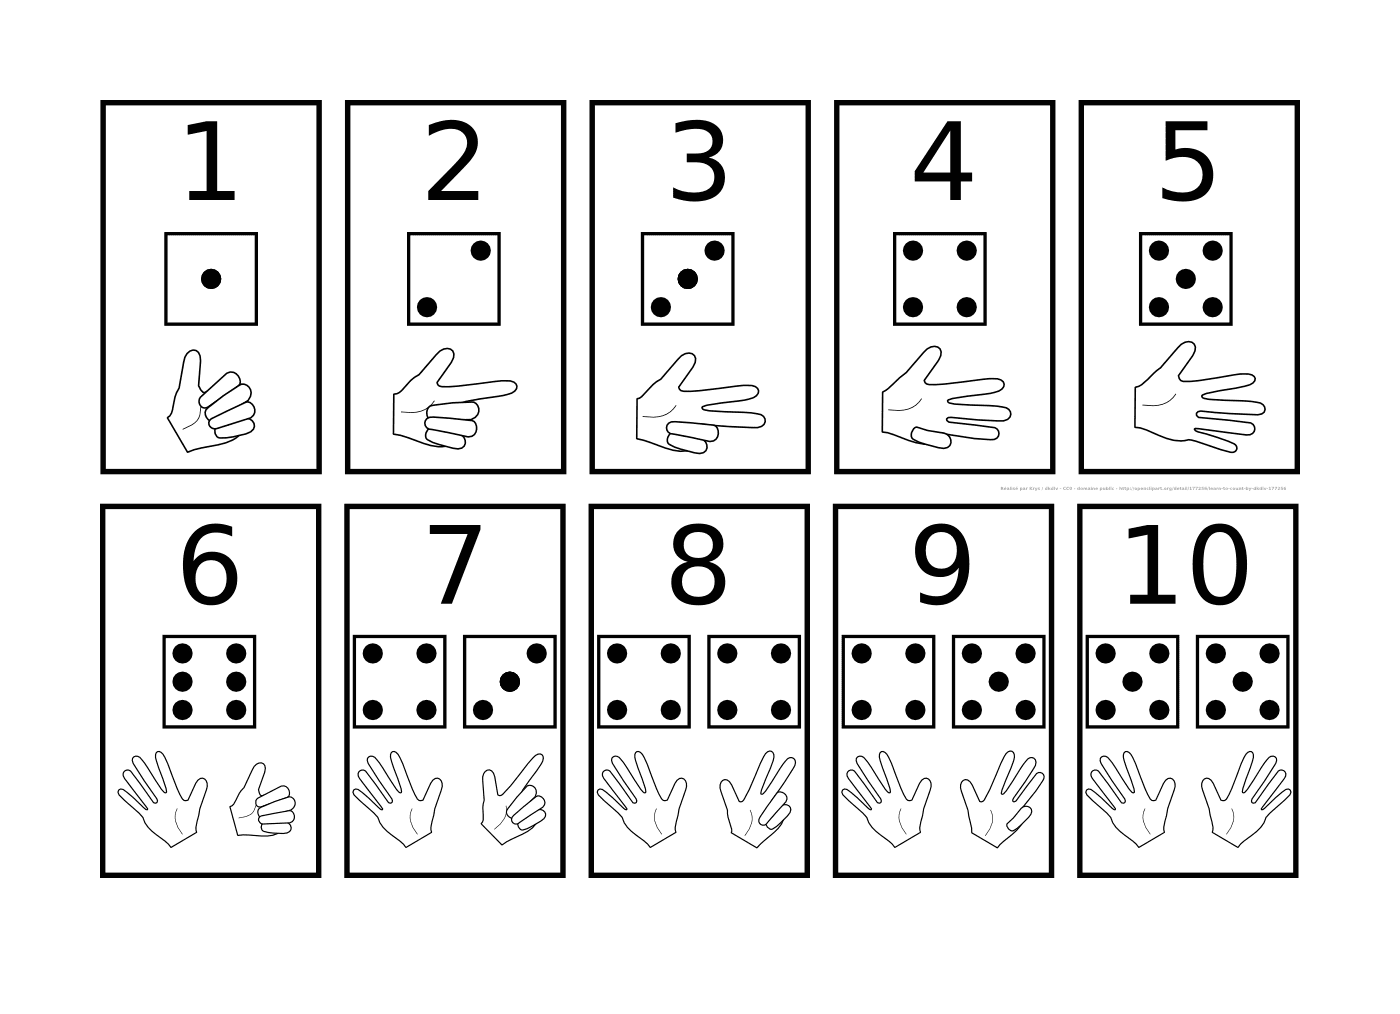  Carta con números y símbolos 